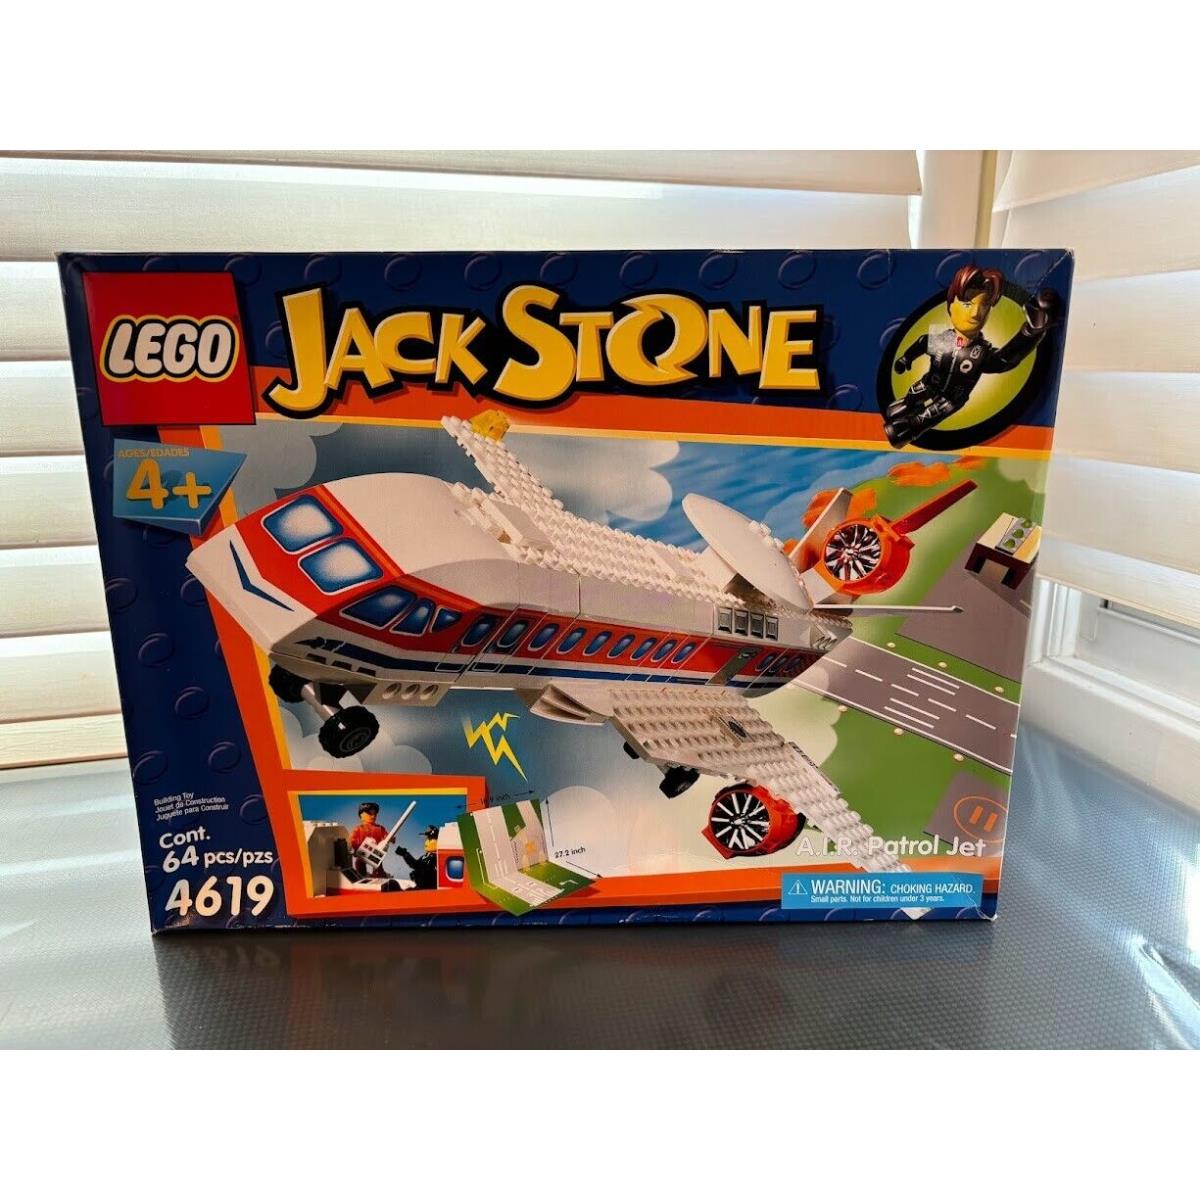 Lego Jack Stone 4619 64 Pieces Patrol Jet